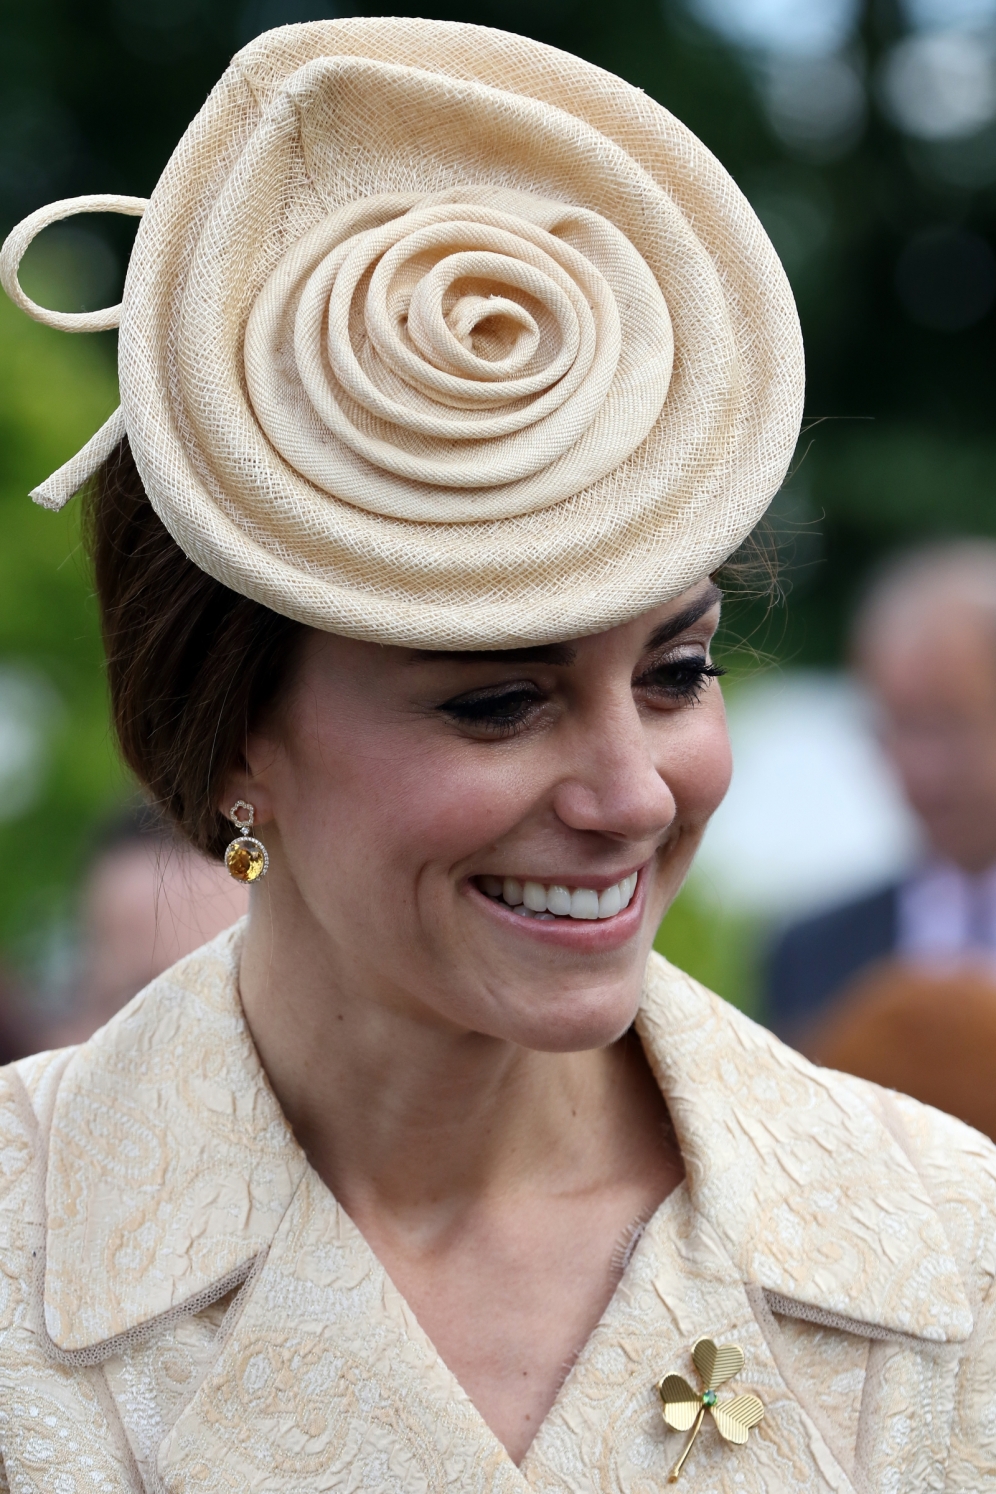 15 giugno 2016. Kate ha aggiunto al look un nuovo cappello a forma di grande rosa.